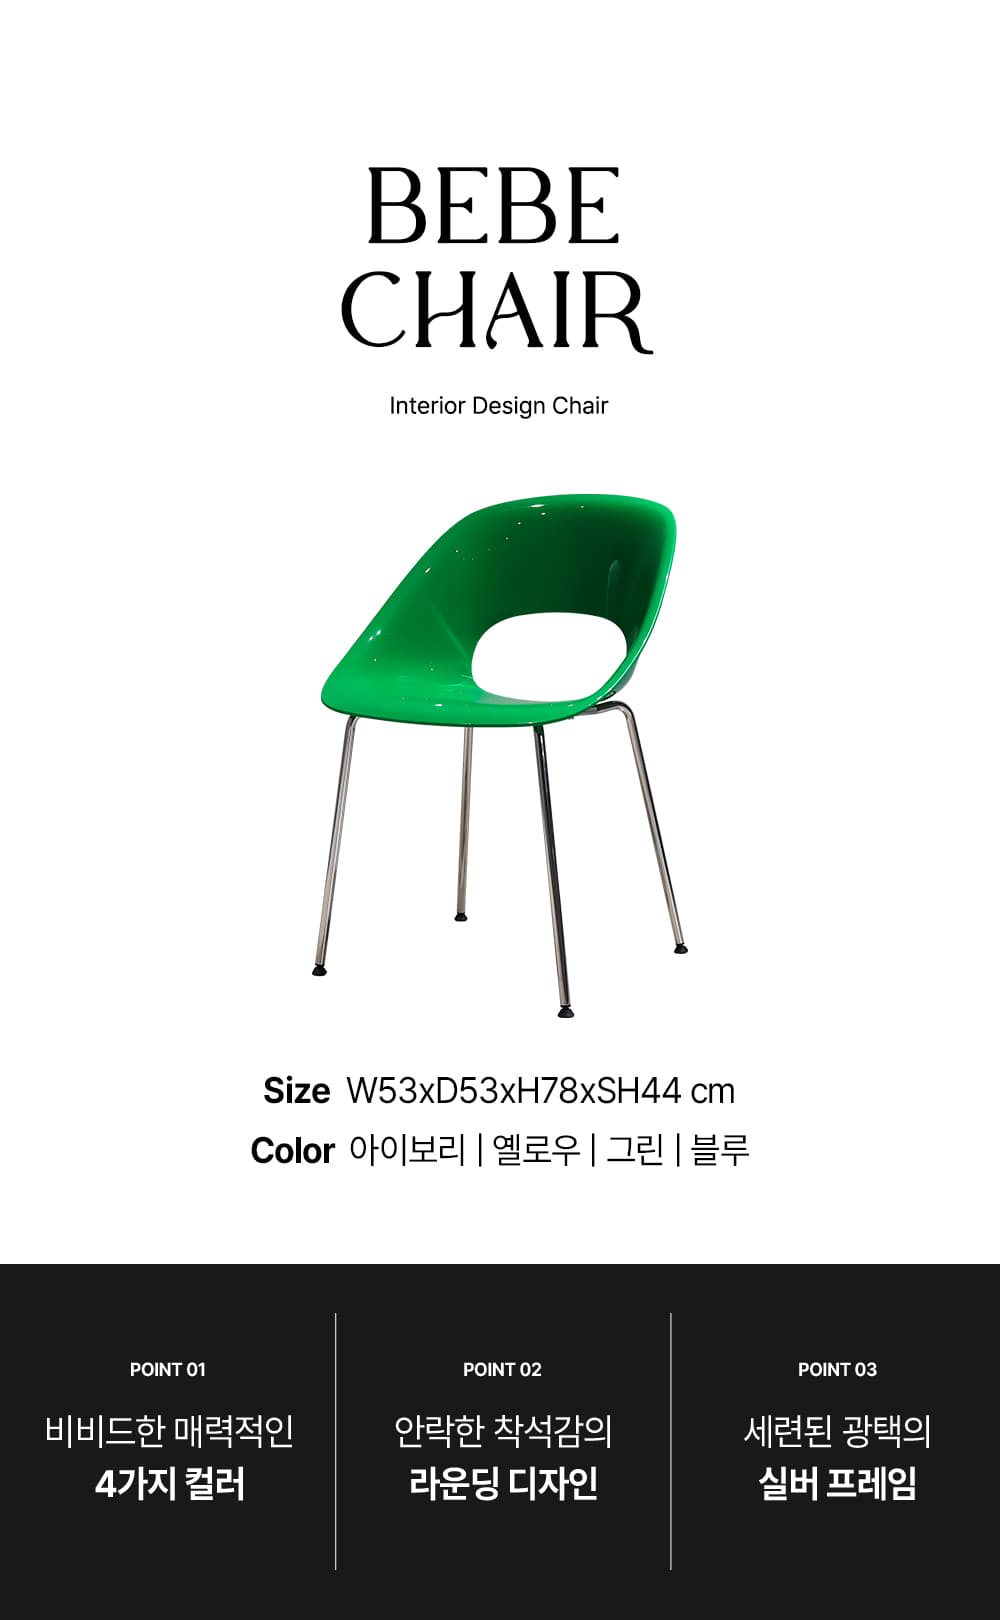 피카소가구 베베체어 아트웨이 / 키워드 : 디자인의자, 인테리어의자, 철재의자, 디자인의자, 카페의자, 미드센추리모던, 실버프레임, 카페의자, 디자인의자